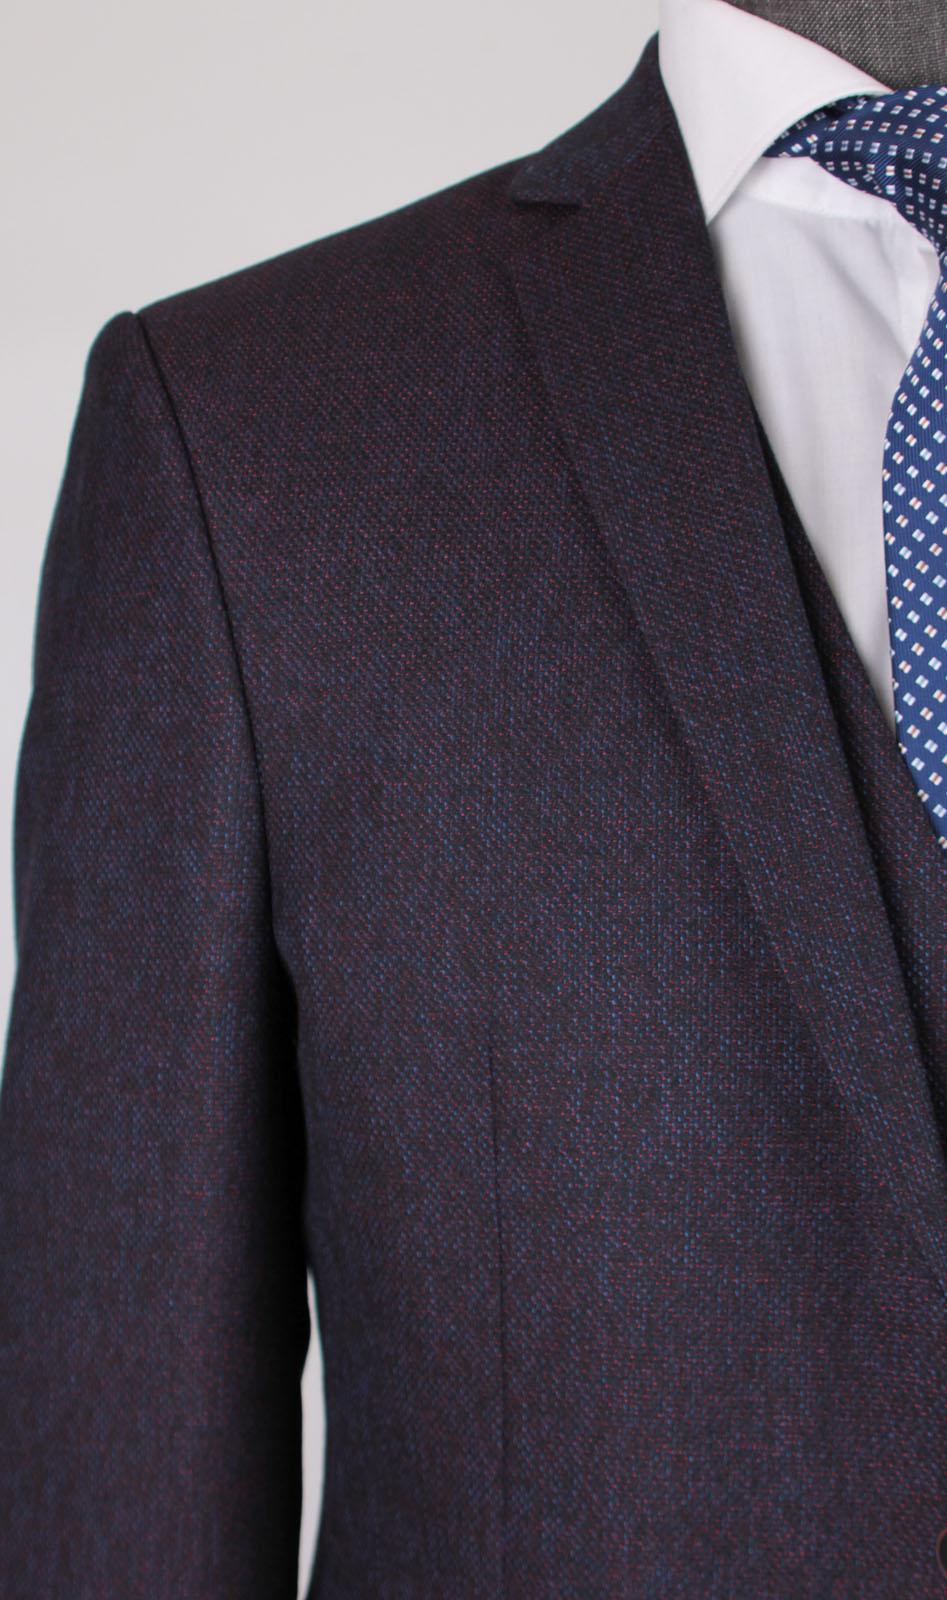 Branson Purple Set Blazer Linen Suit